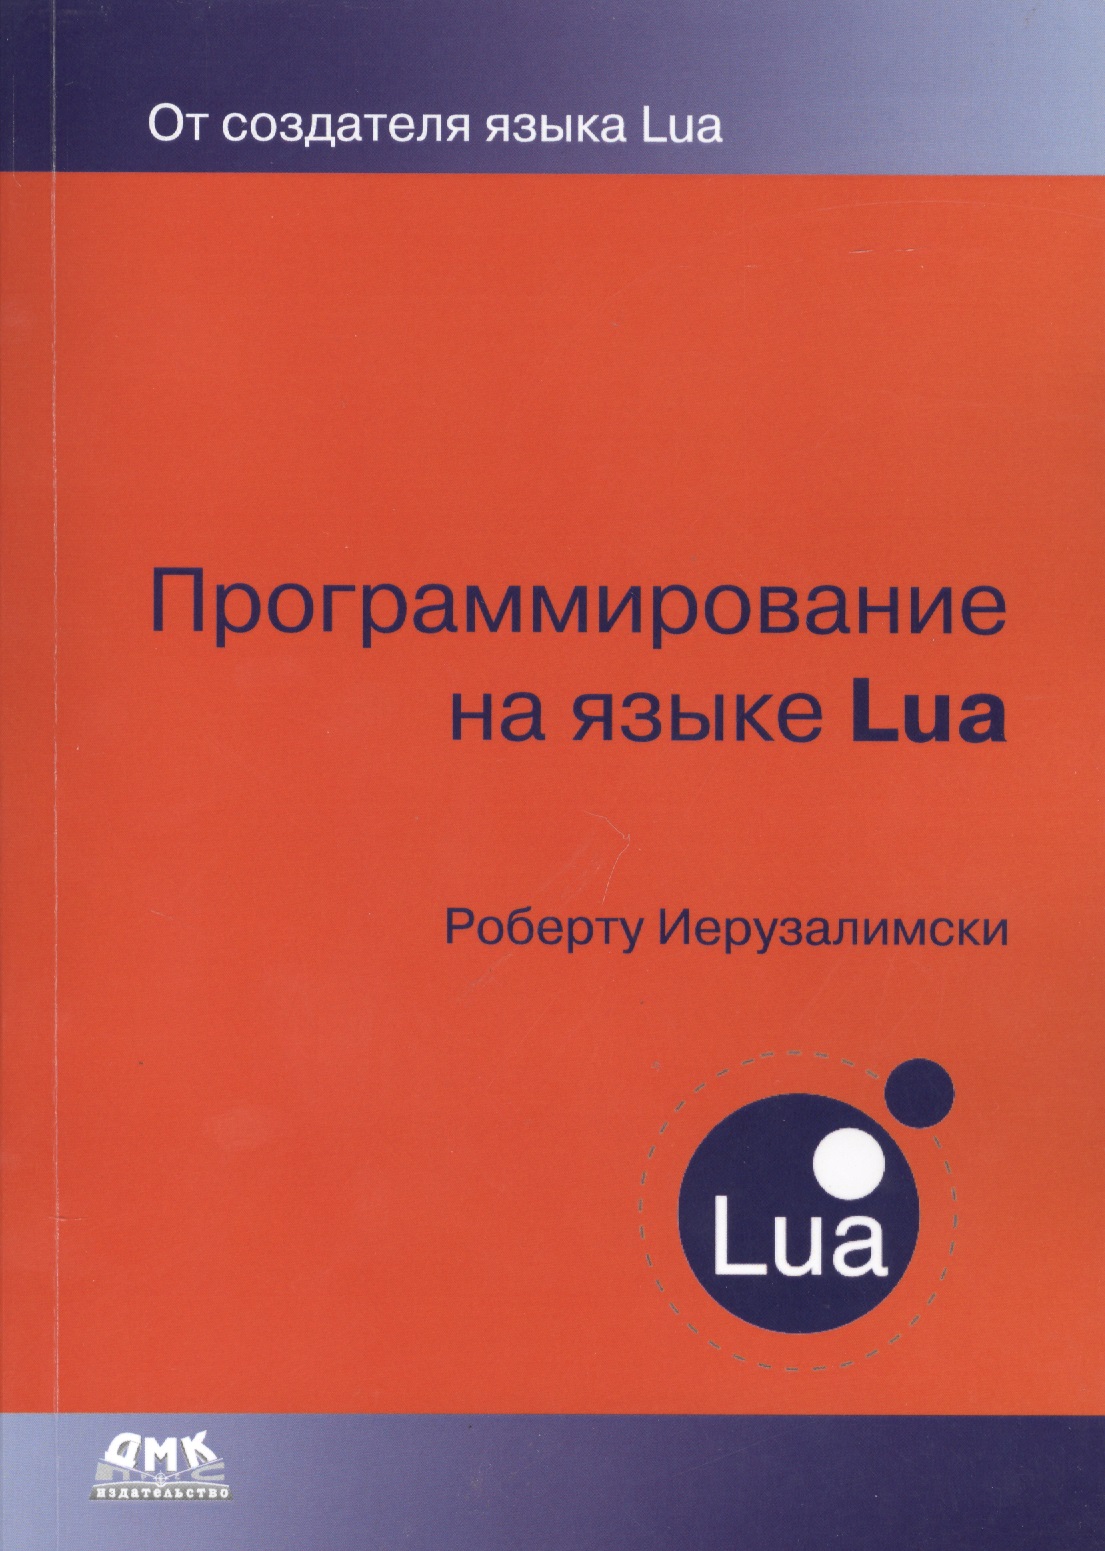 Программирование на языке Lua